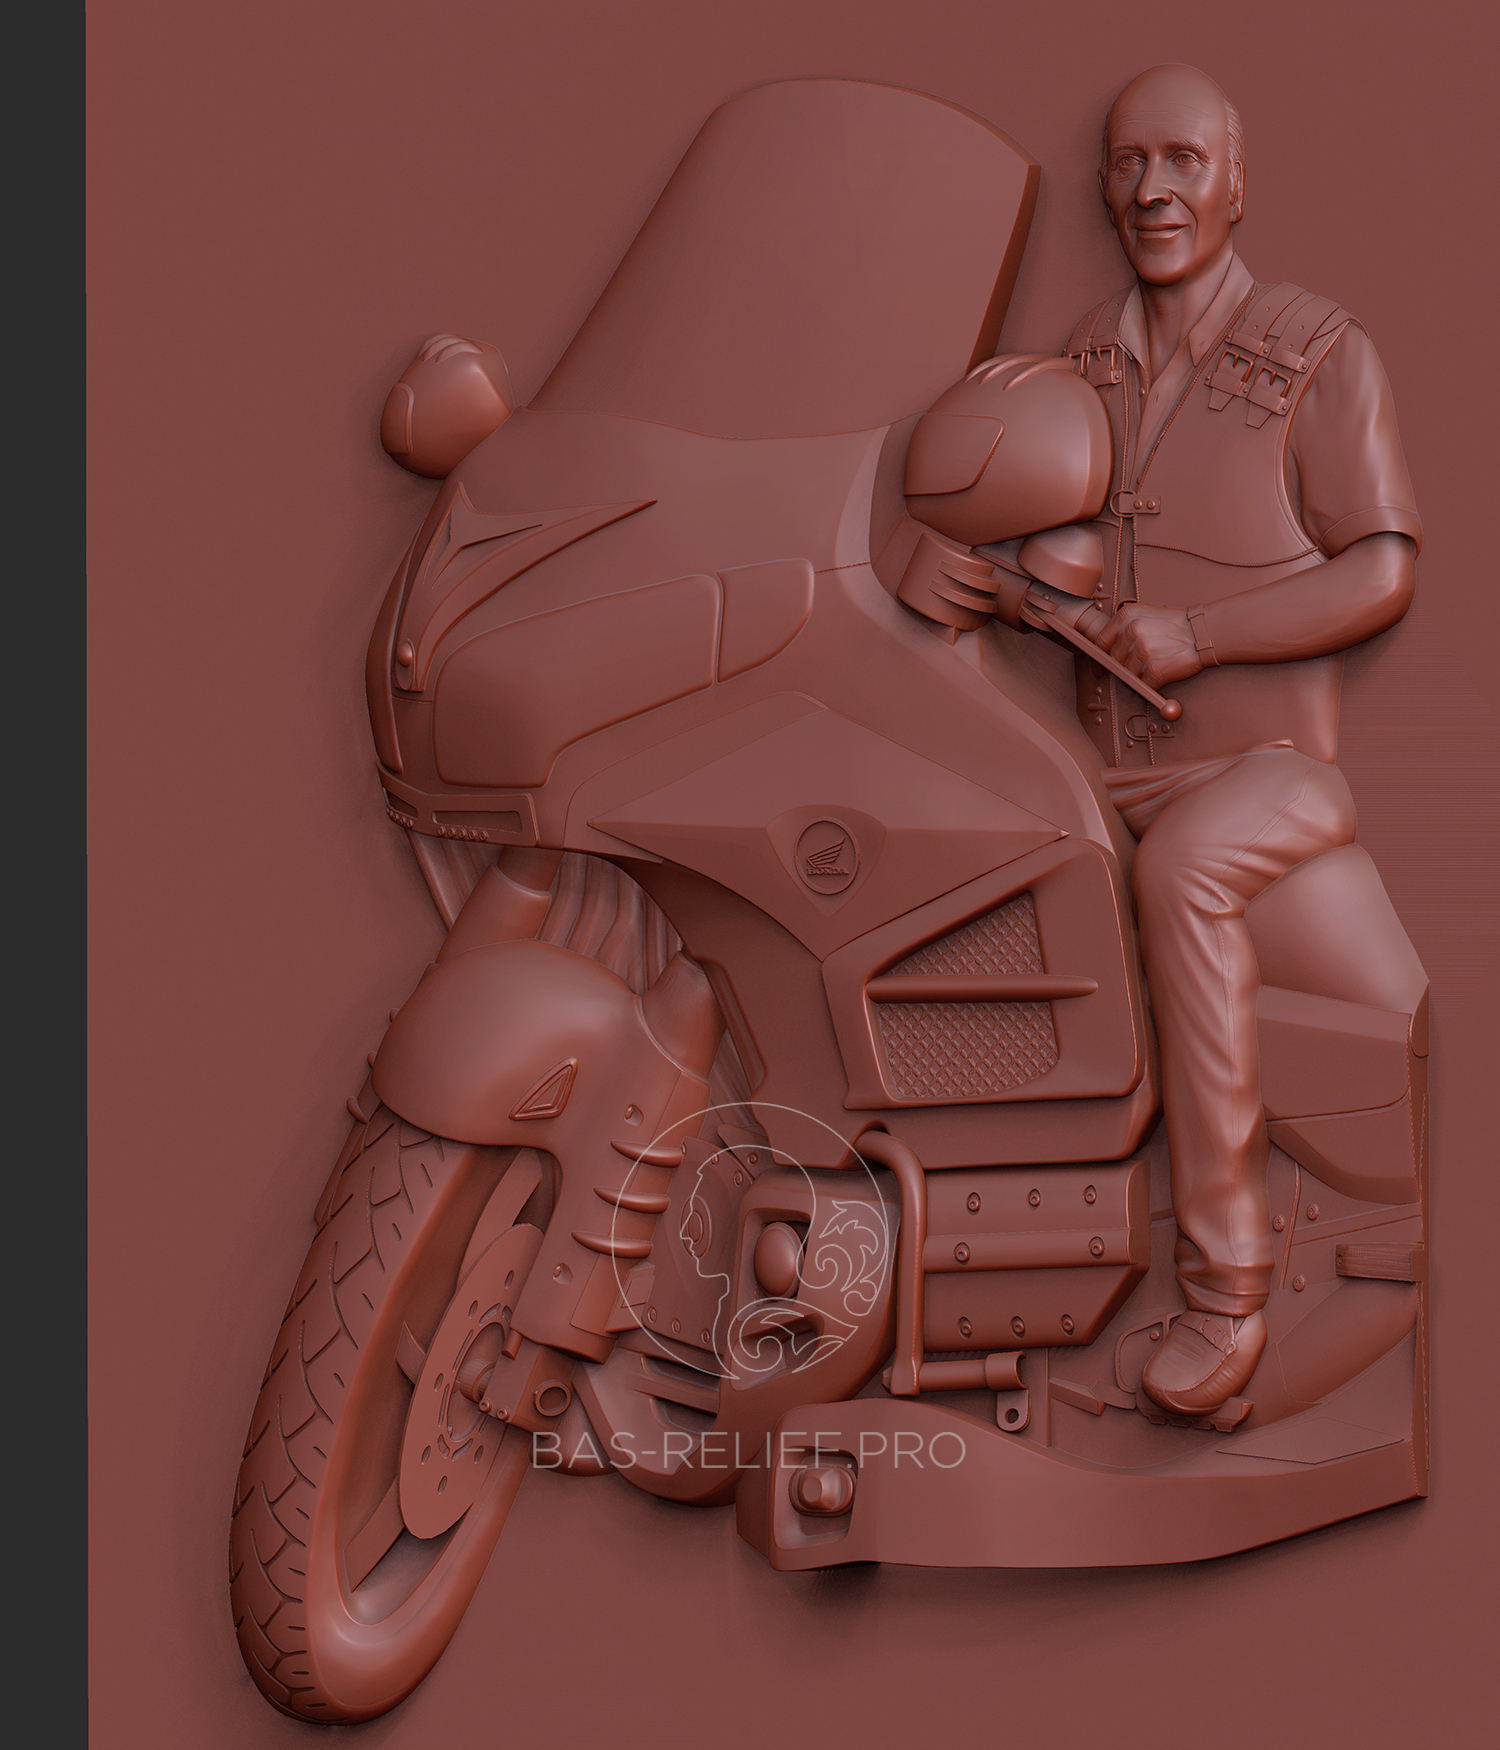 Моделирование барельефа мотоциклиста на памятник